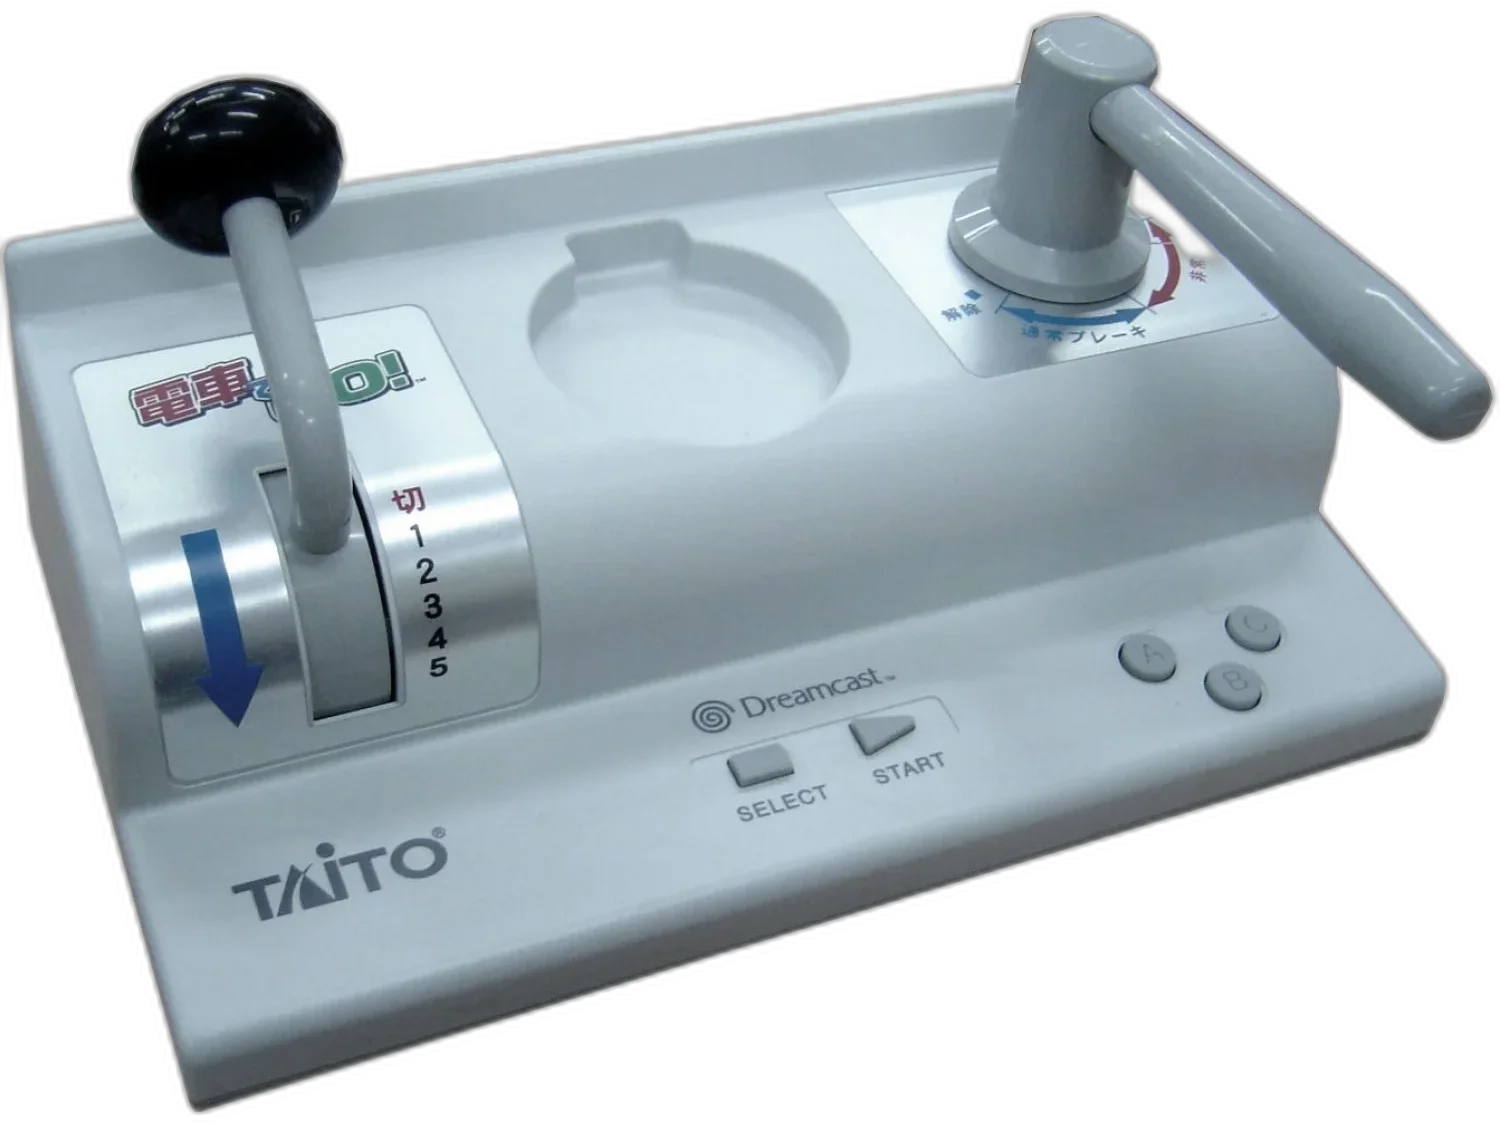  Taito Dreamcast Densha De Go! Controller